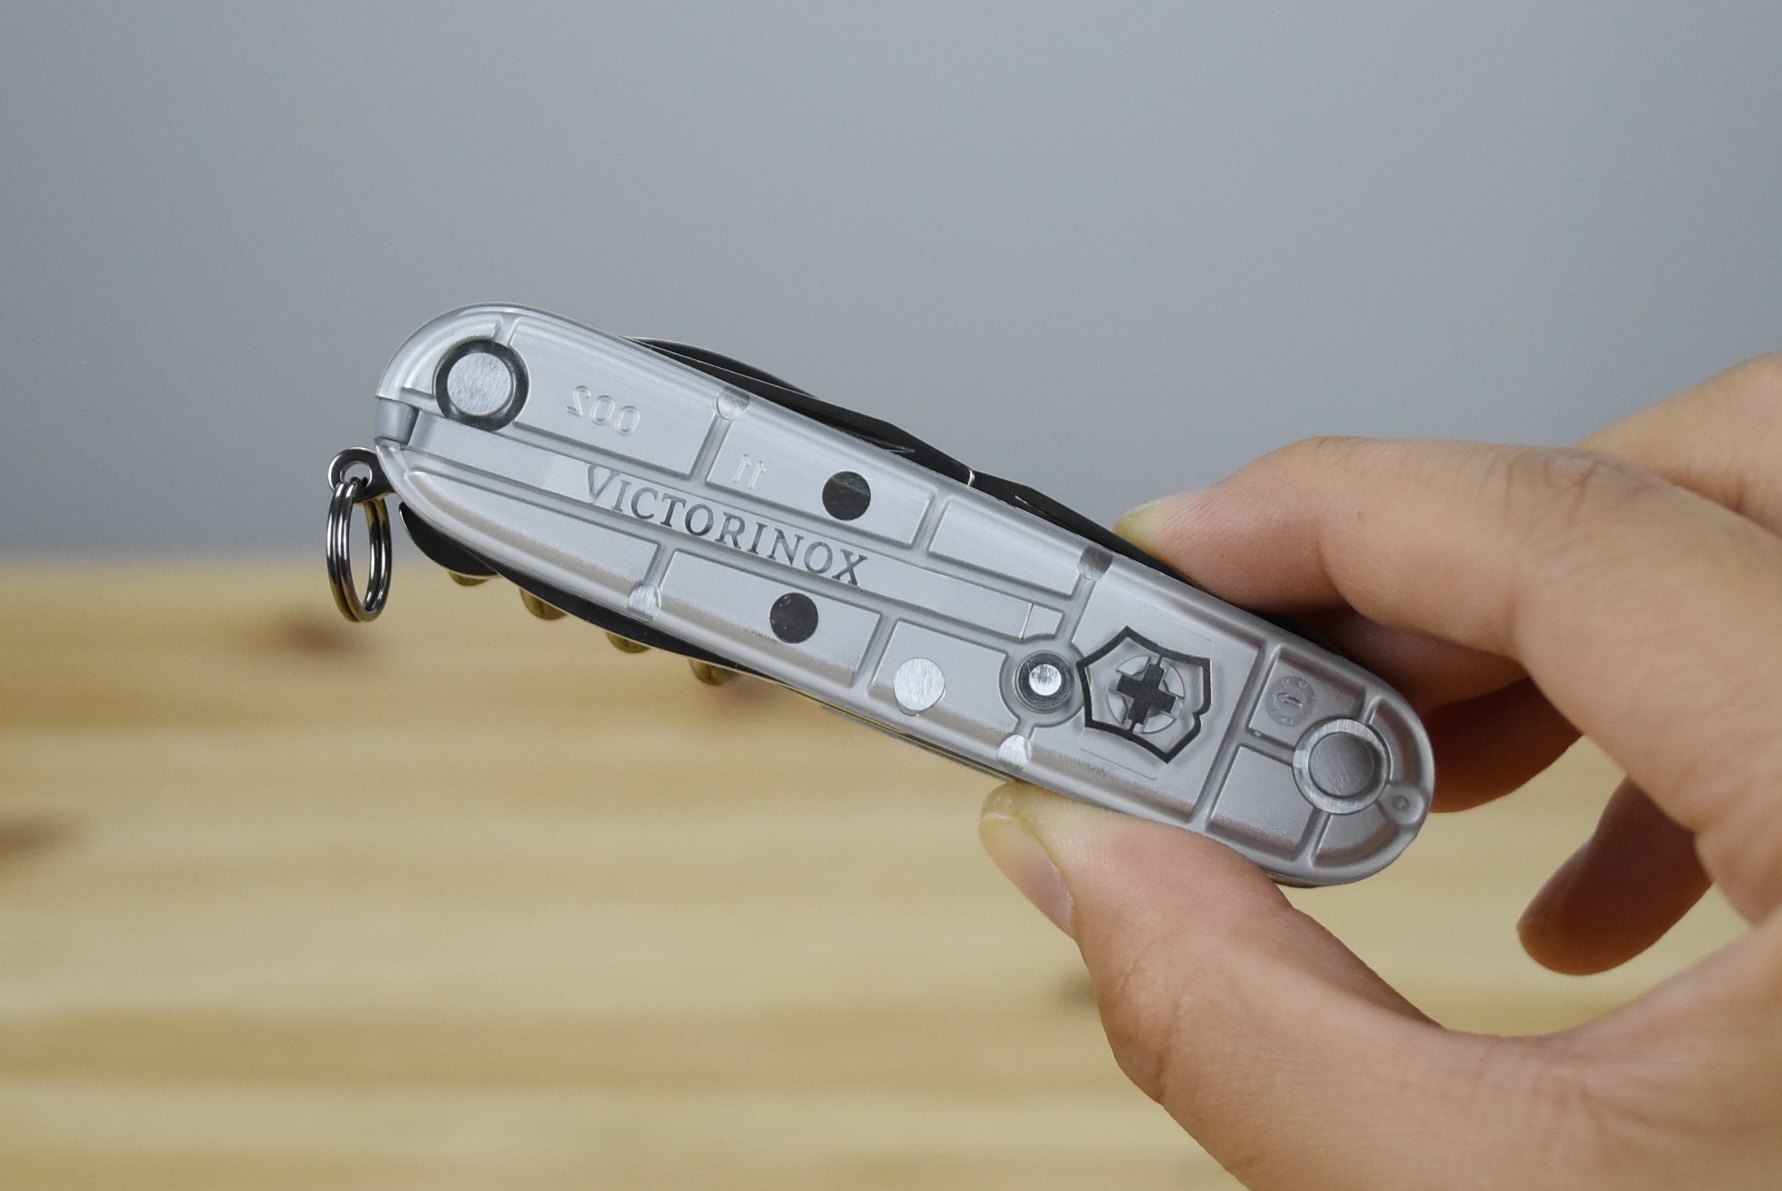 Victorinox Huntsman Multitool Pocket Knife 1.3713 (9 Versions)